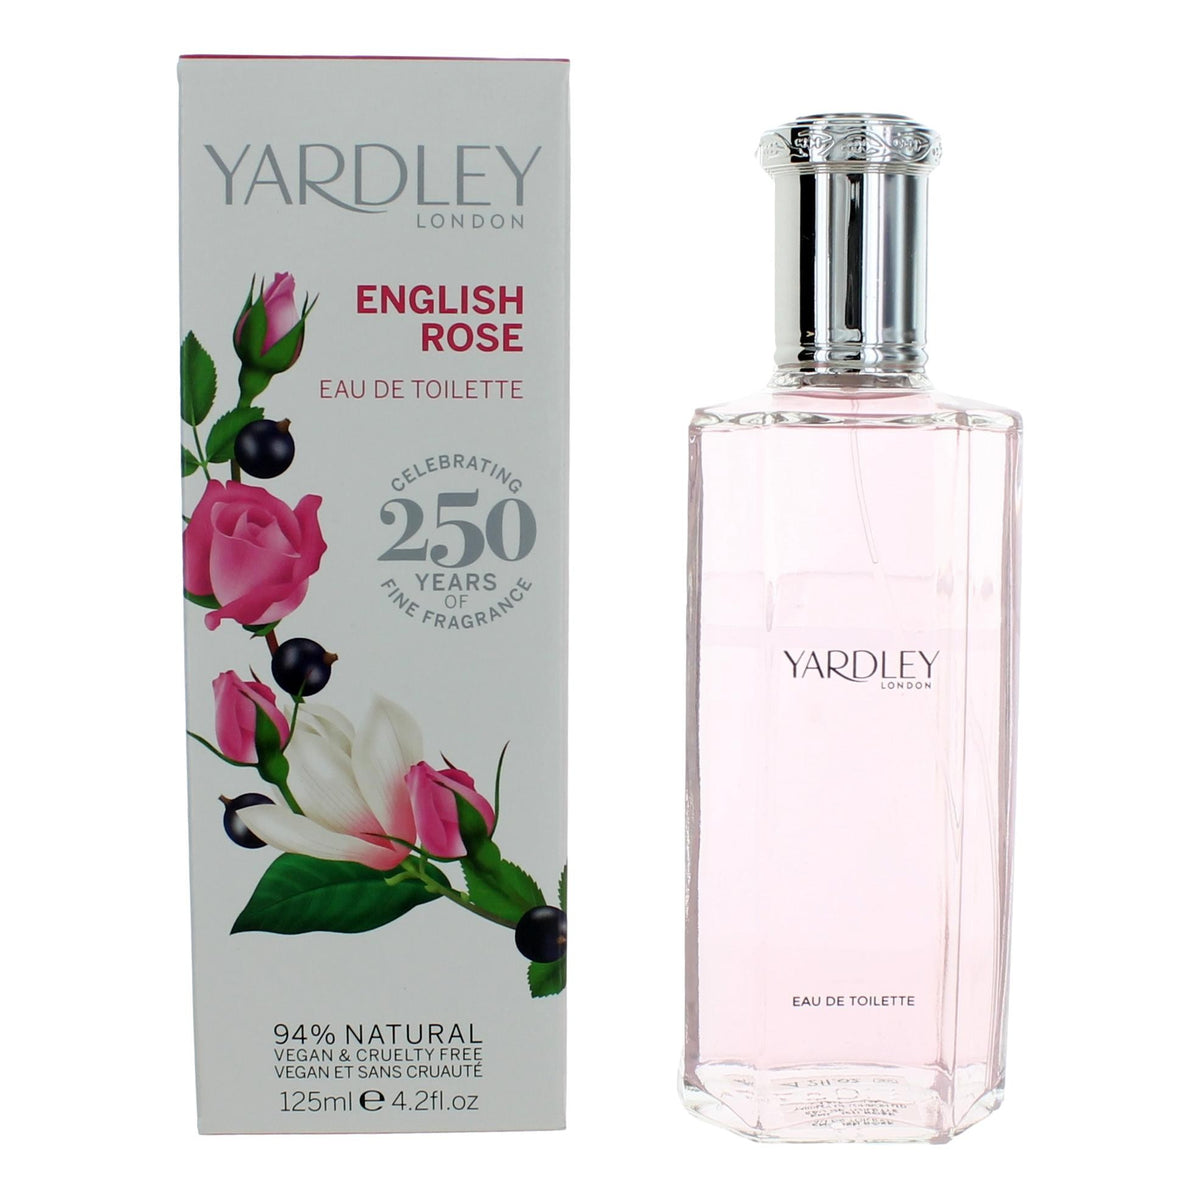 Yardley English Rose by Yardley of London, 4.2 oz Eau De Toilette Spray for Women